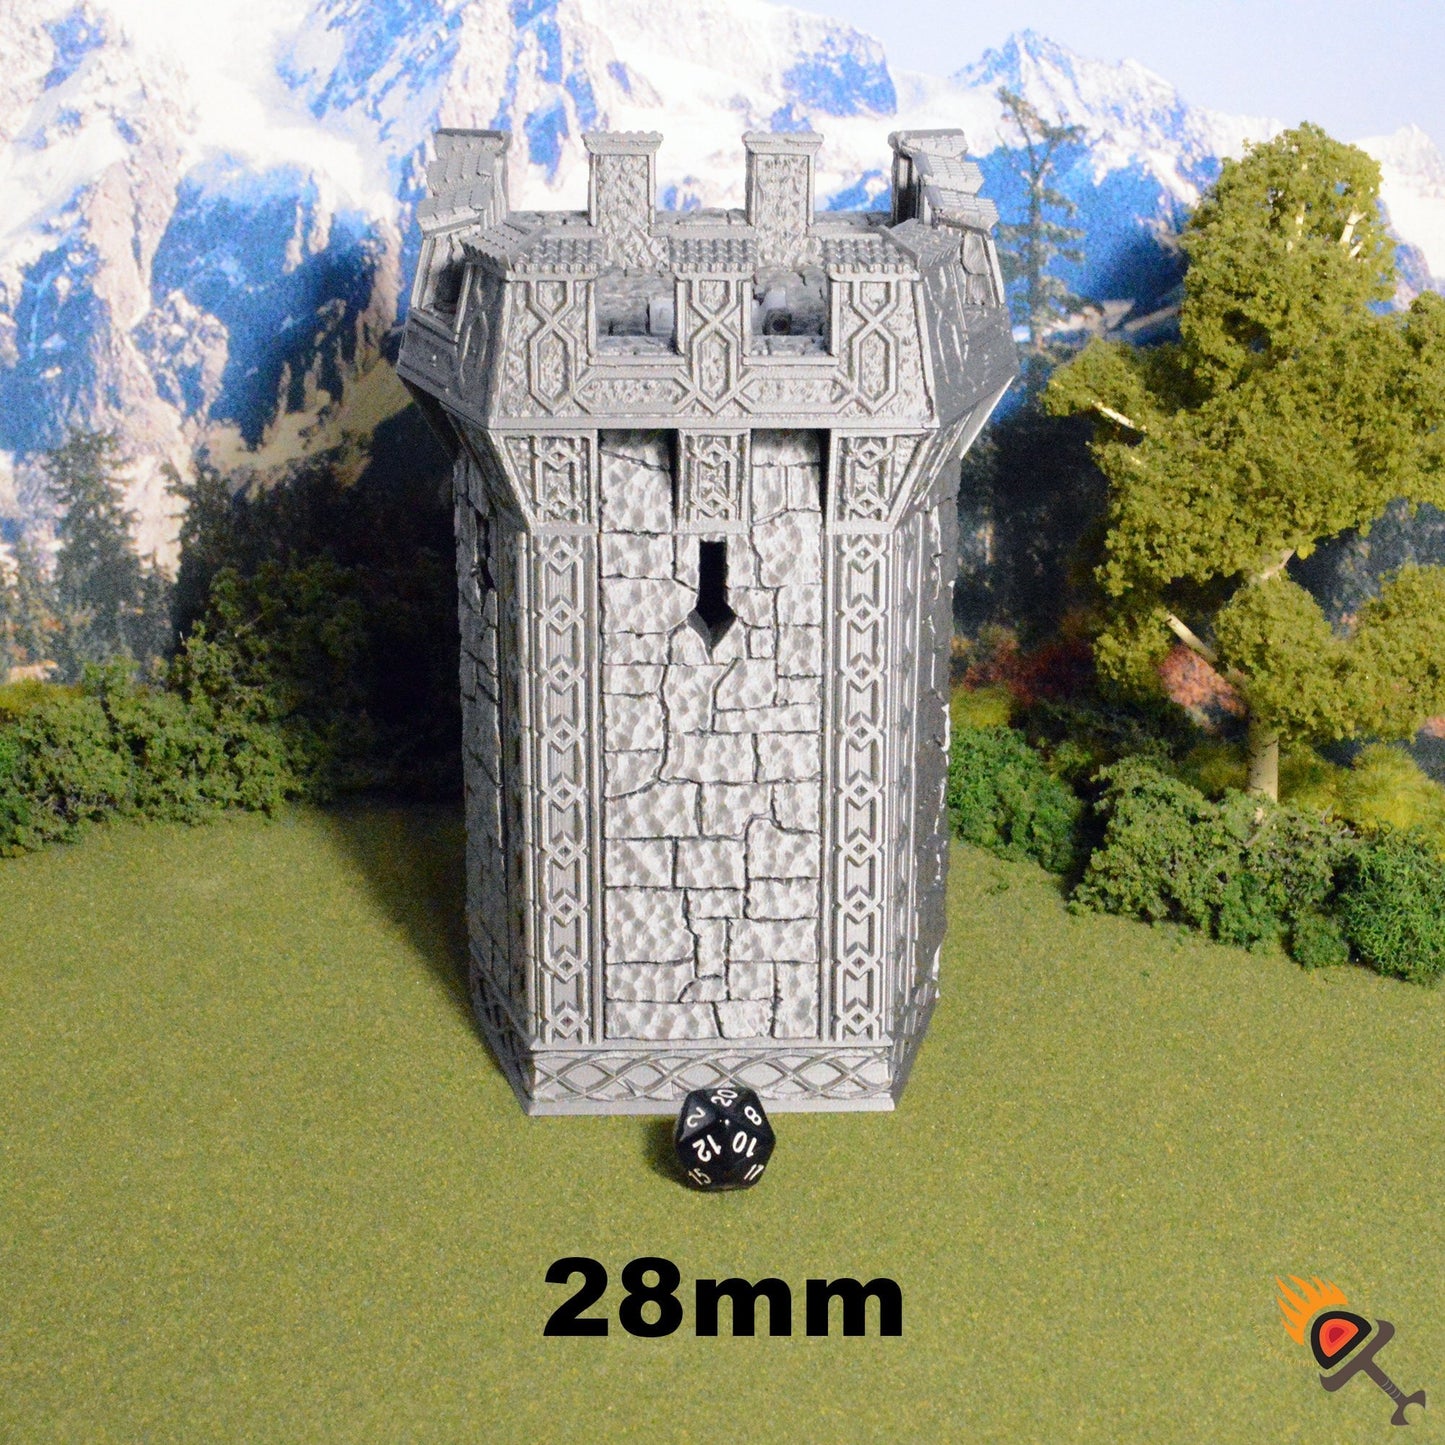 Ironhelm Bastions 15mm 28mm for D&D Terrain, DnD Pathfinder Warhammer 40k Dwarven Walls - Modular OpenLOCK